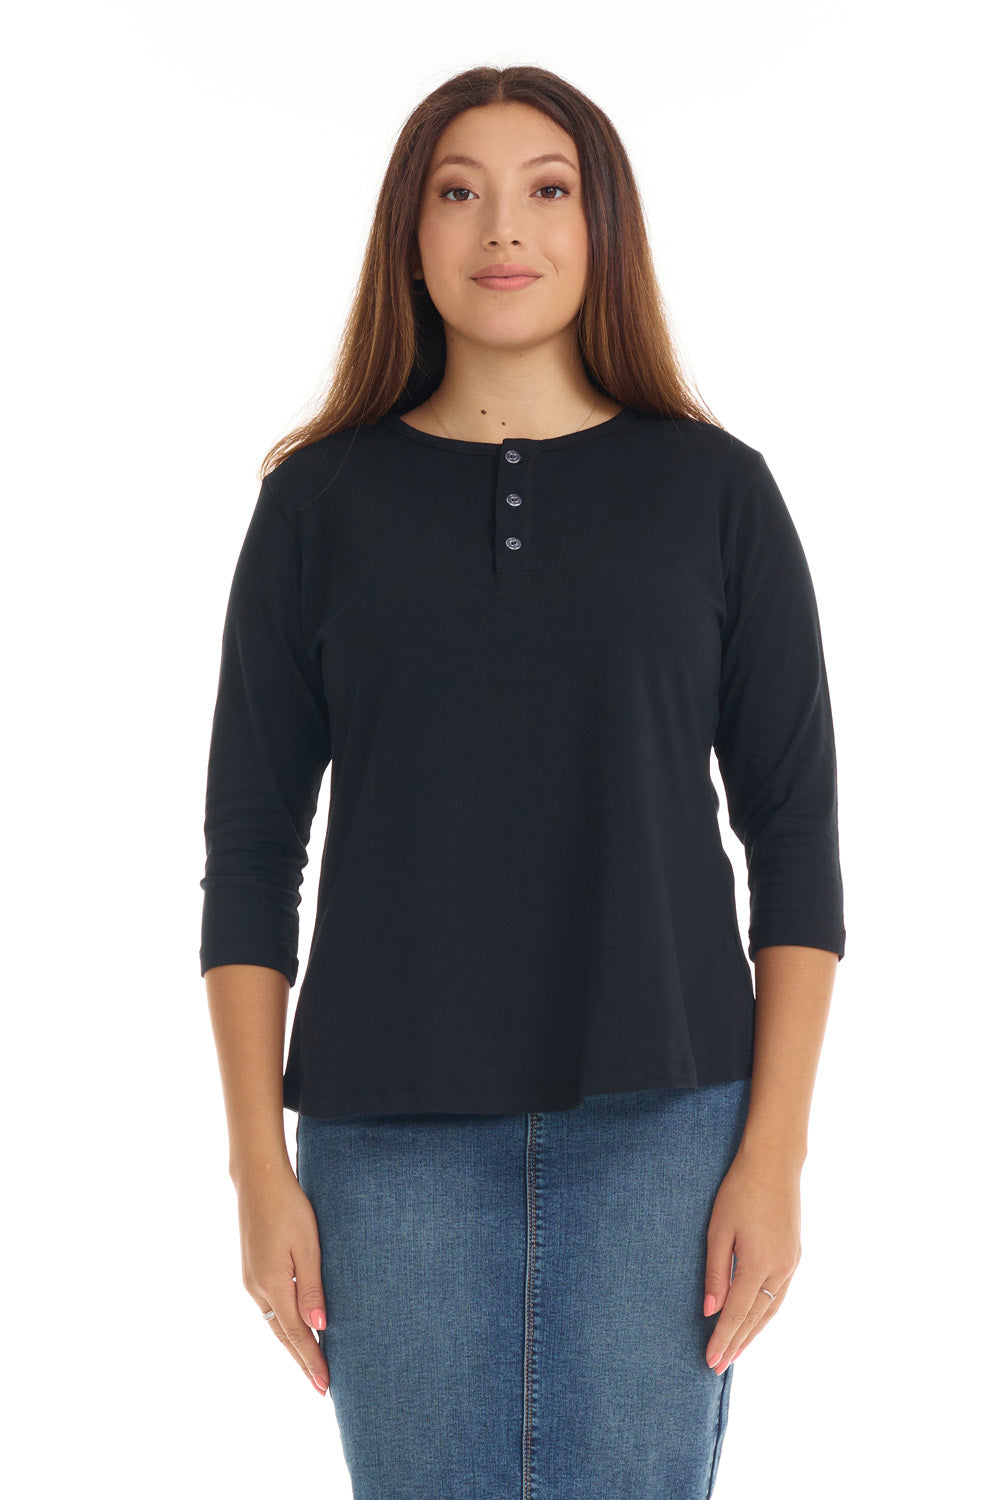 black 3/4 sleeve henley shirt for women